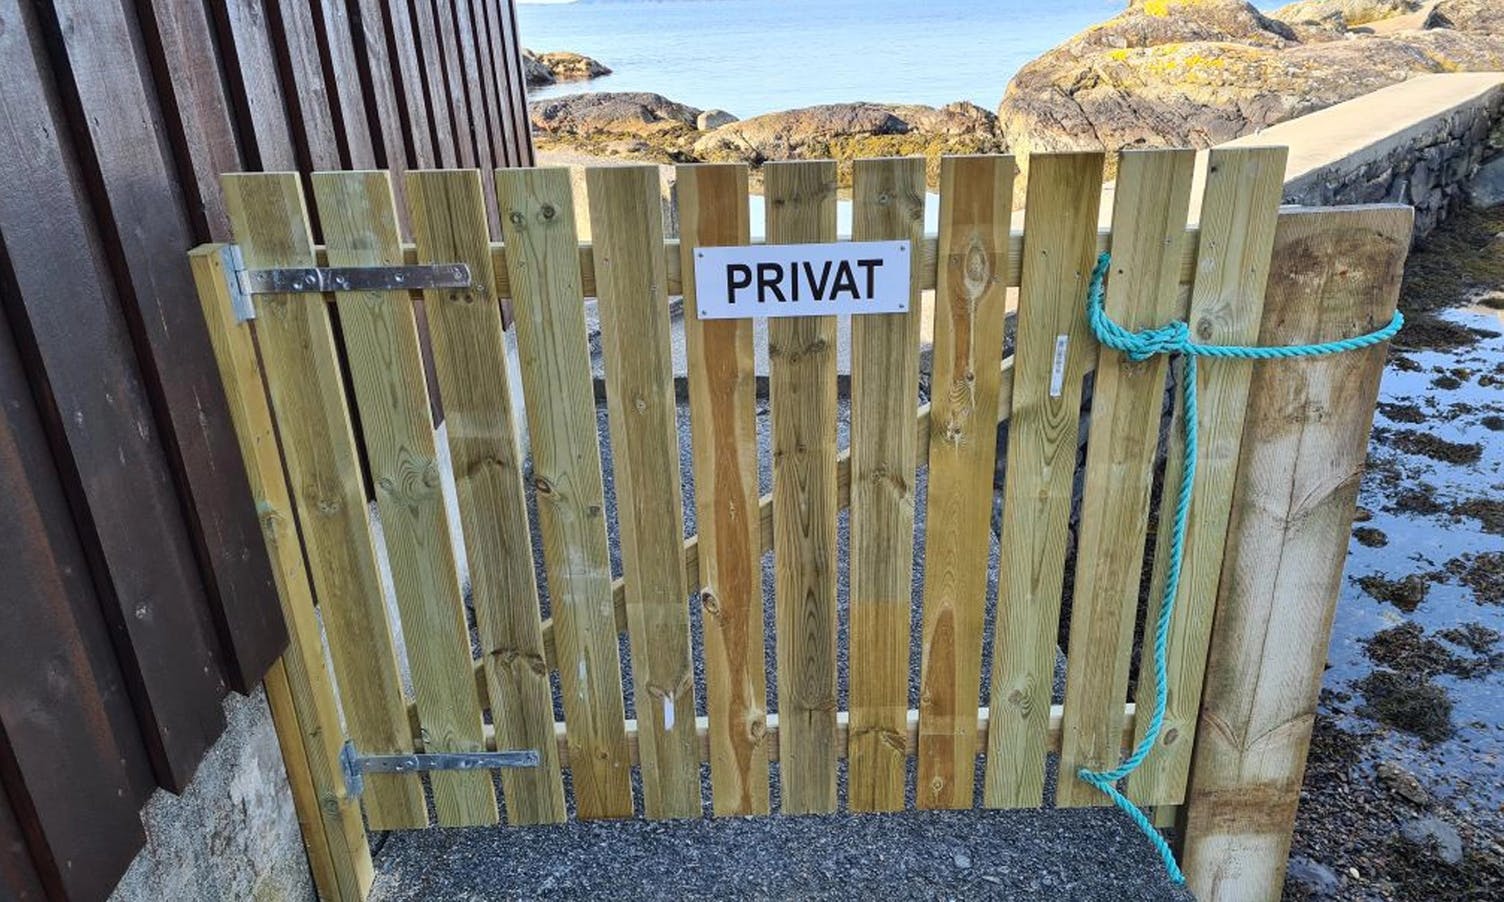 Denne porten skapte reaksjonar i helga. Først fjerna grunneigar privat-skiltet, no blir heile porten flytta. (Privat foto)